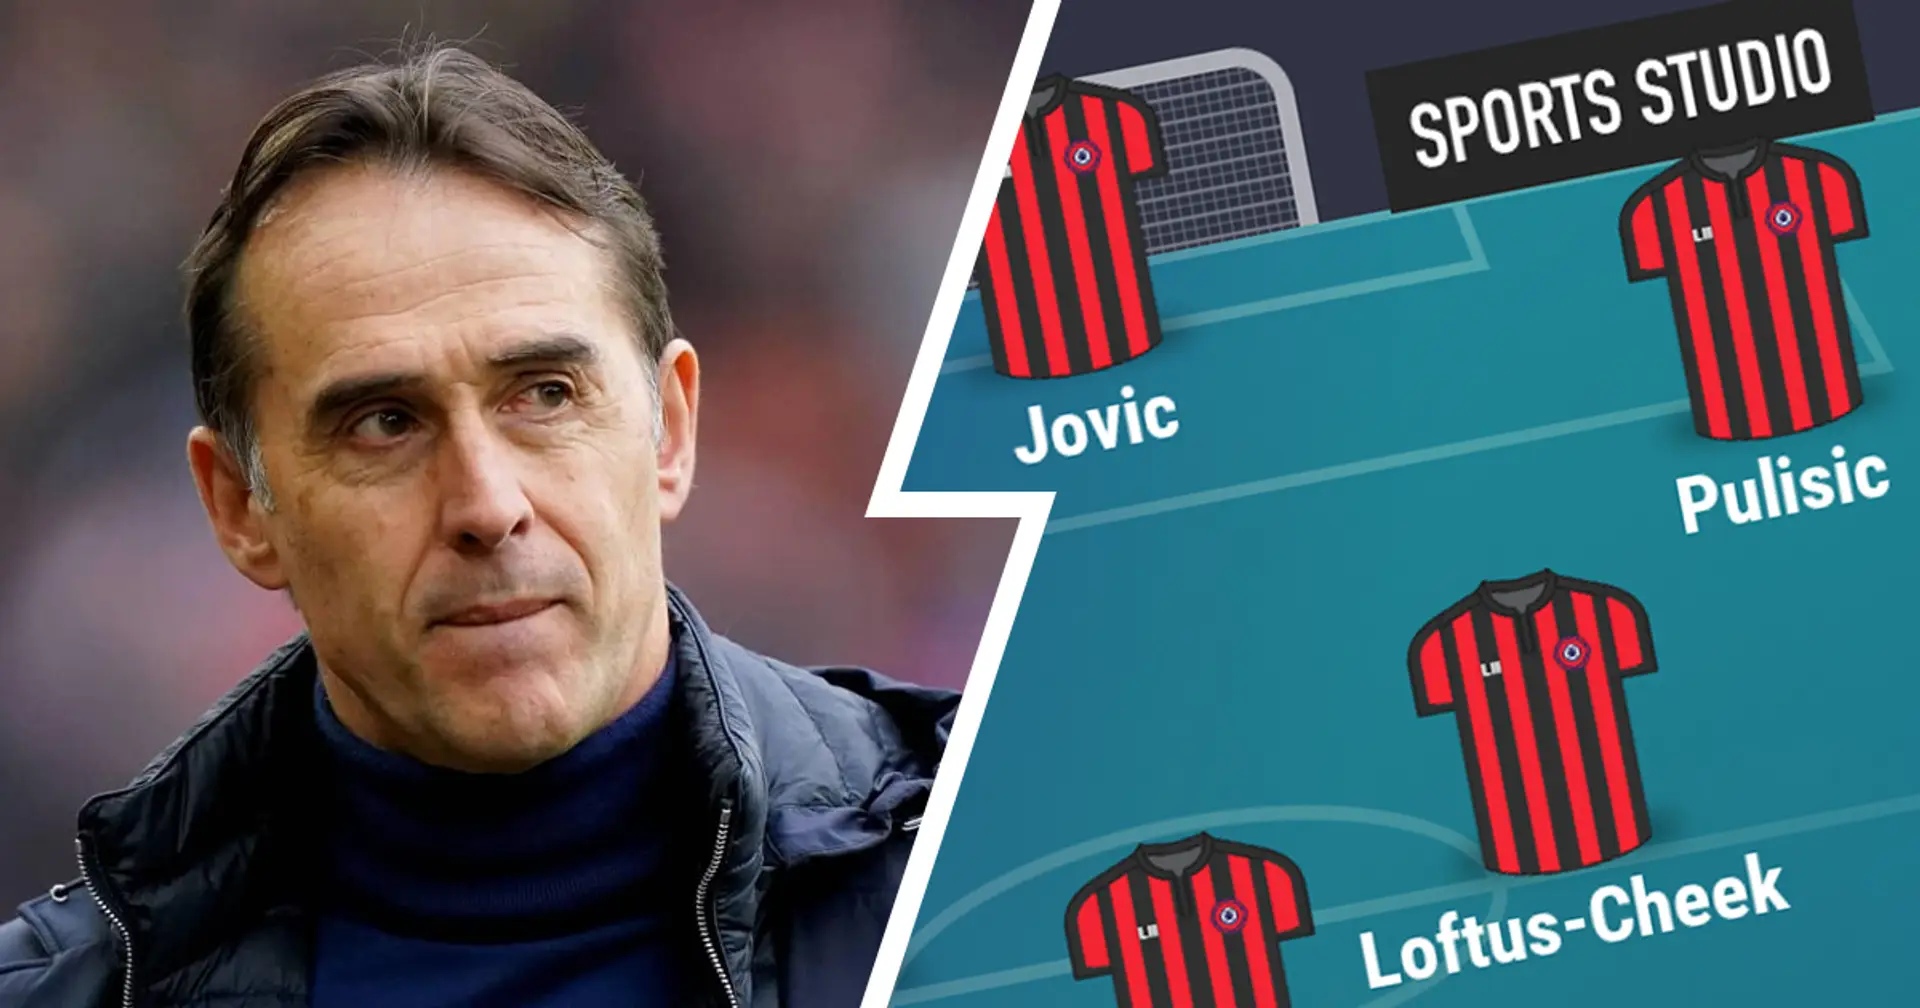 Come potrebbe giocare il Milan di Jules Lopetegui? 2 possibili formazioni a confronto